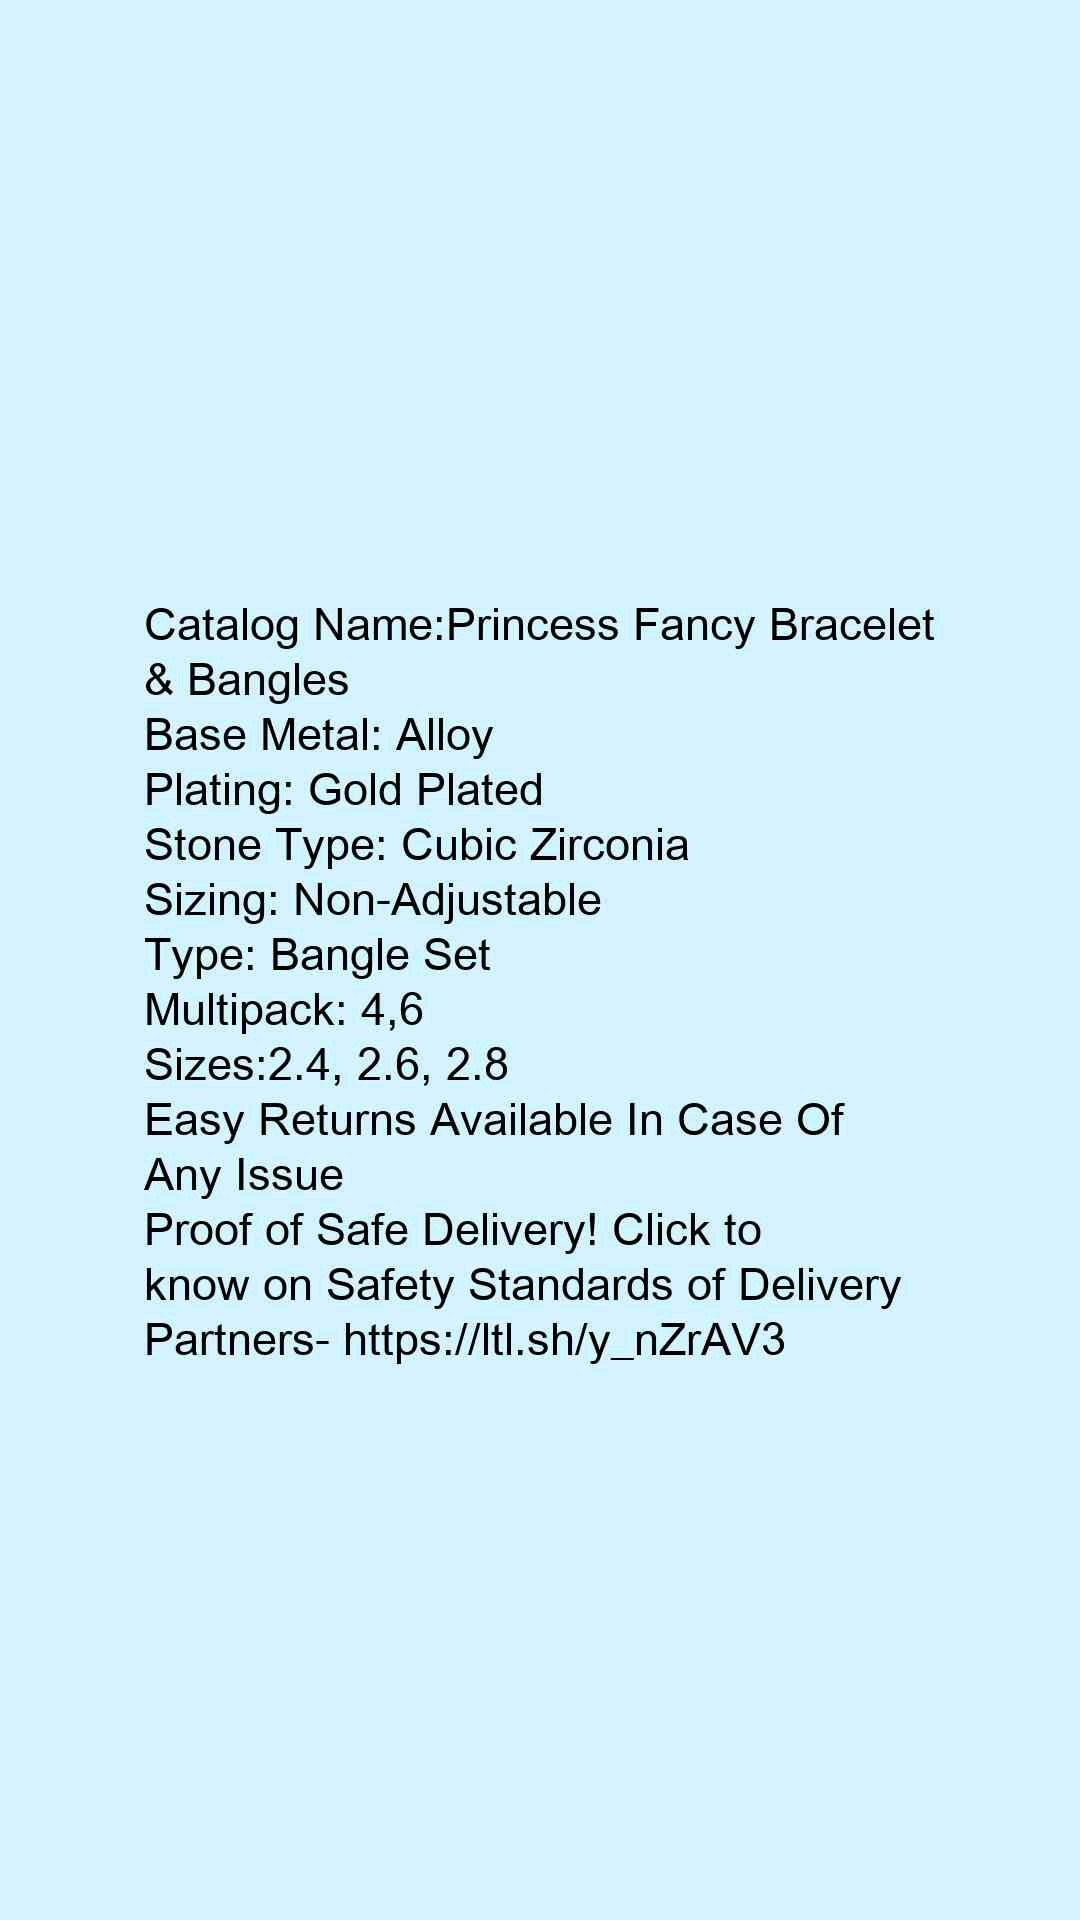 Princess Fancy Bracelet & Bangles - Faritha